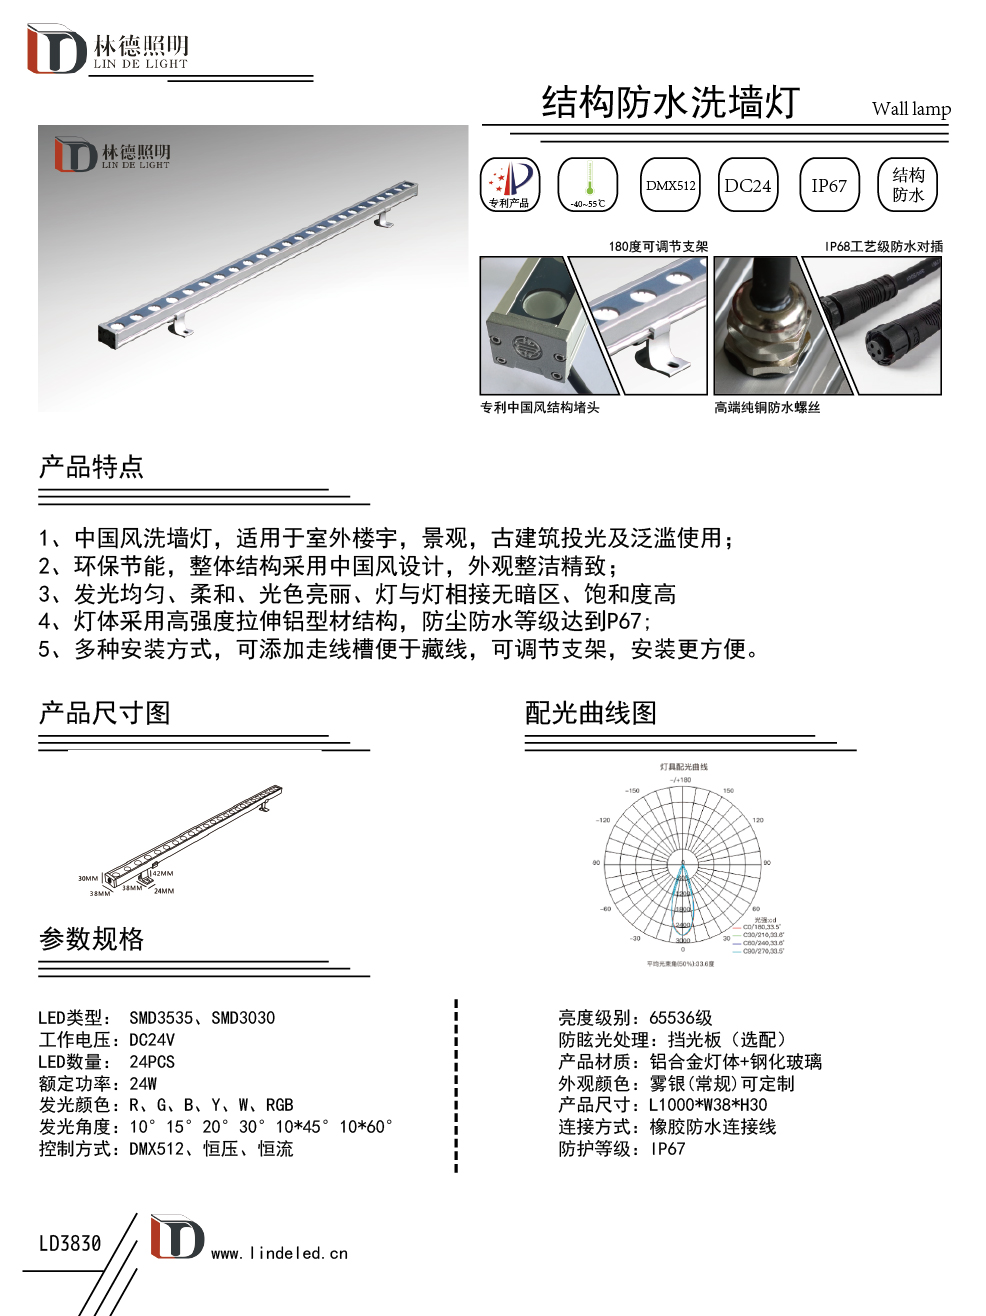 新款中國風24W3830結構防水洗牆燈普通款.jpg